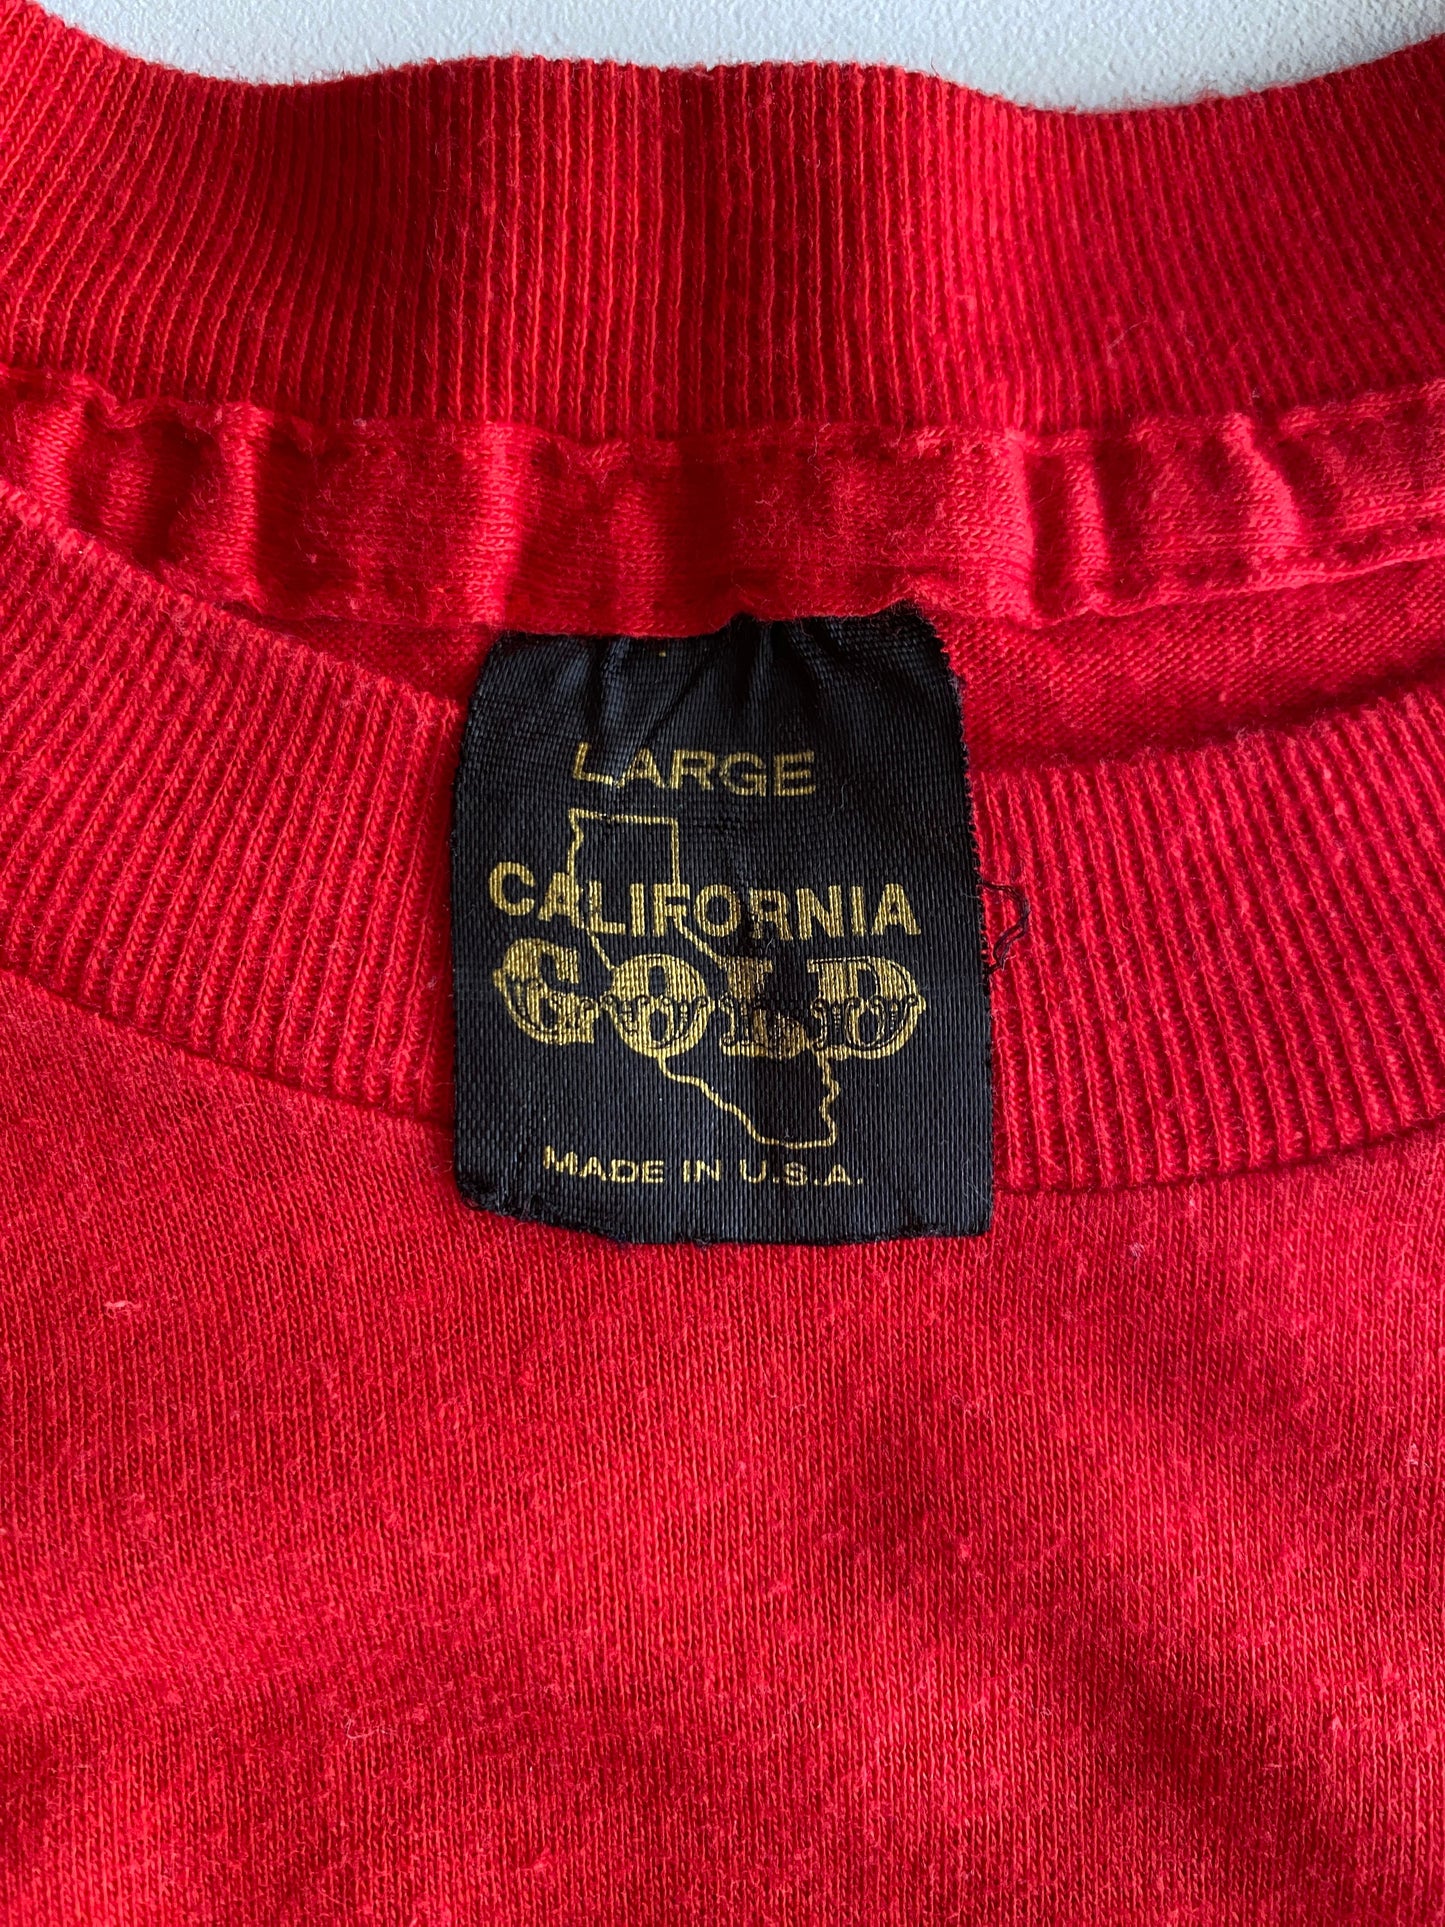 Large. Vintage 50/50 cotton Las Vegas T shirt made in USA